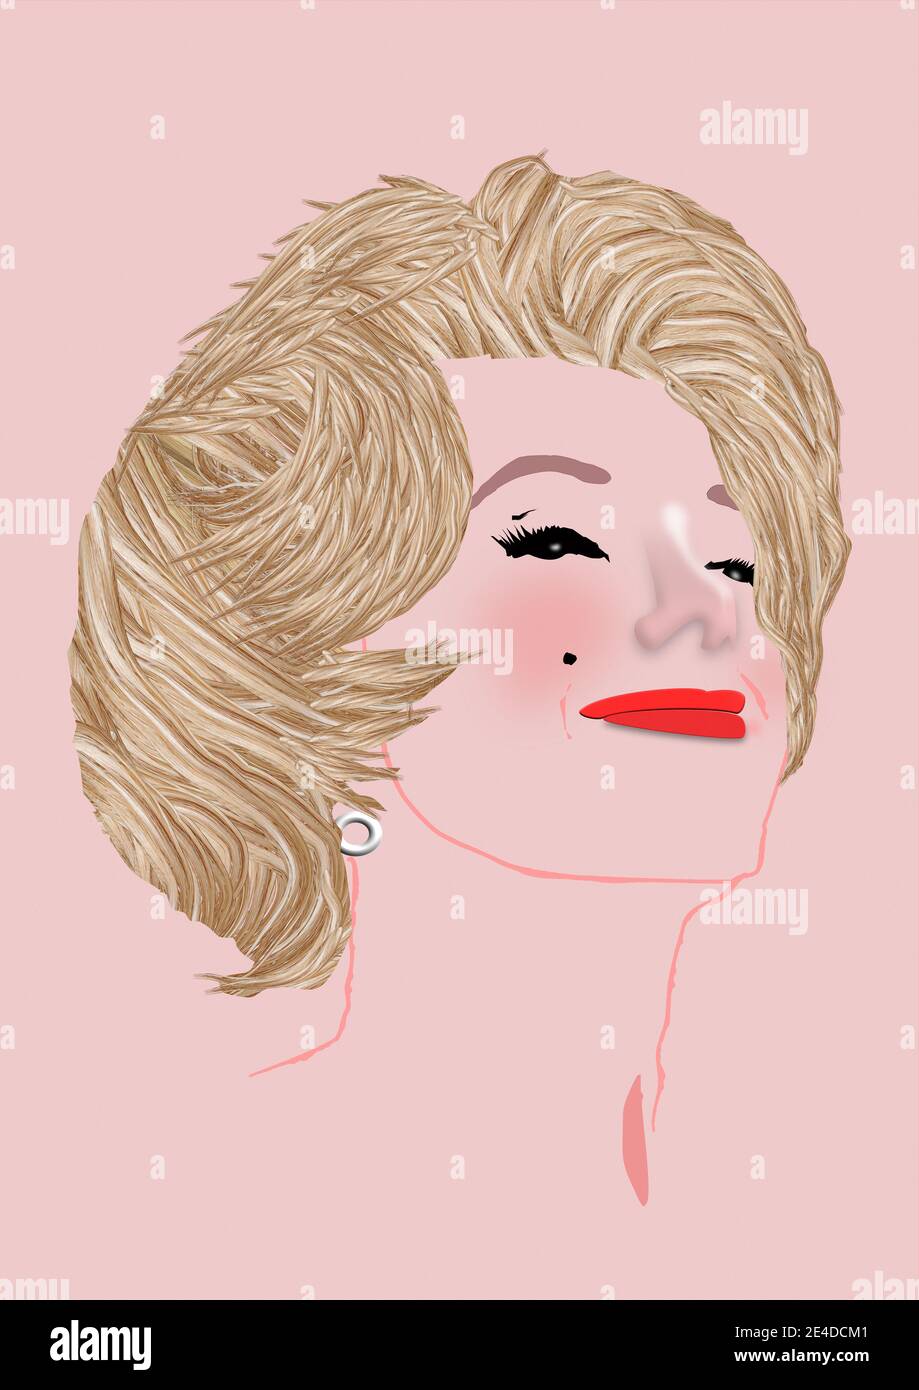 Illustration portrait de Marilyn Monroe. Banque D'Images